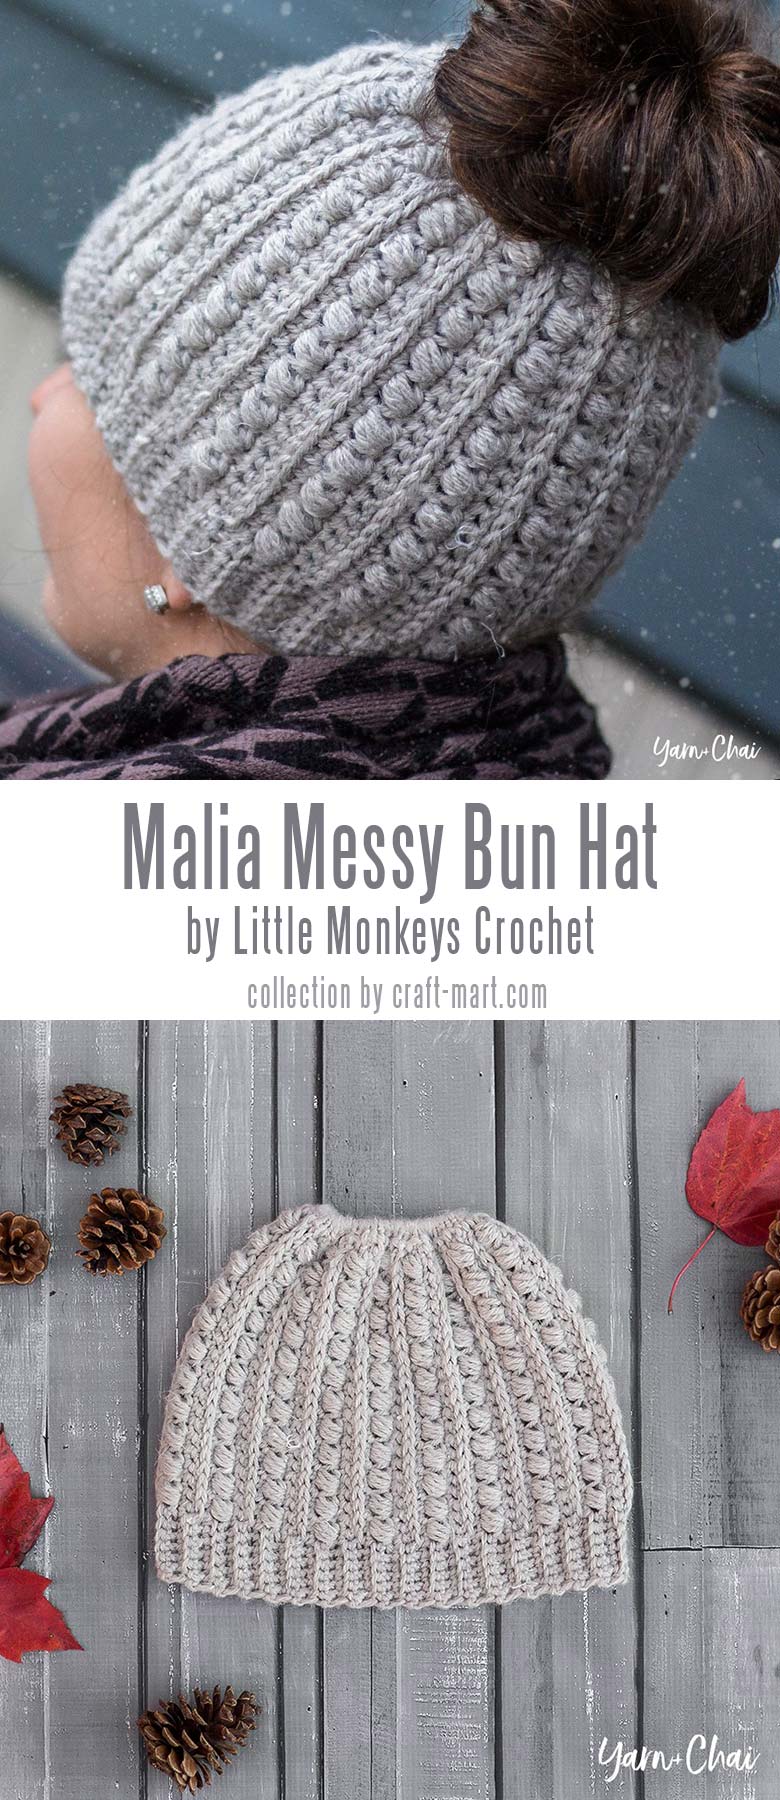 easy crochet hat tutorials - Crochet Messy Bun Beanie "Malia" by Little Monkeys Crochet 